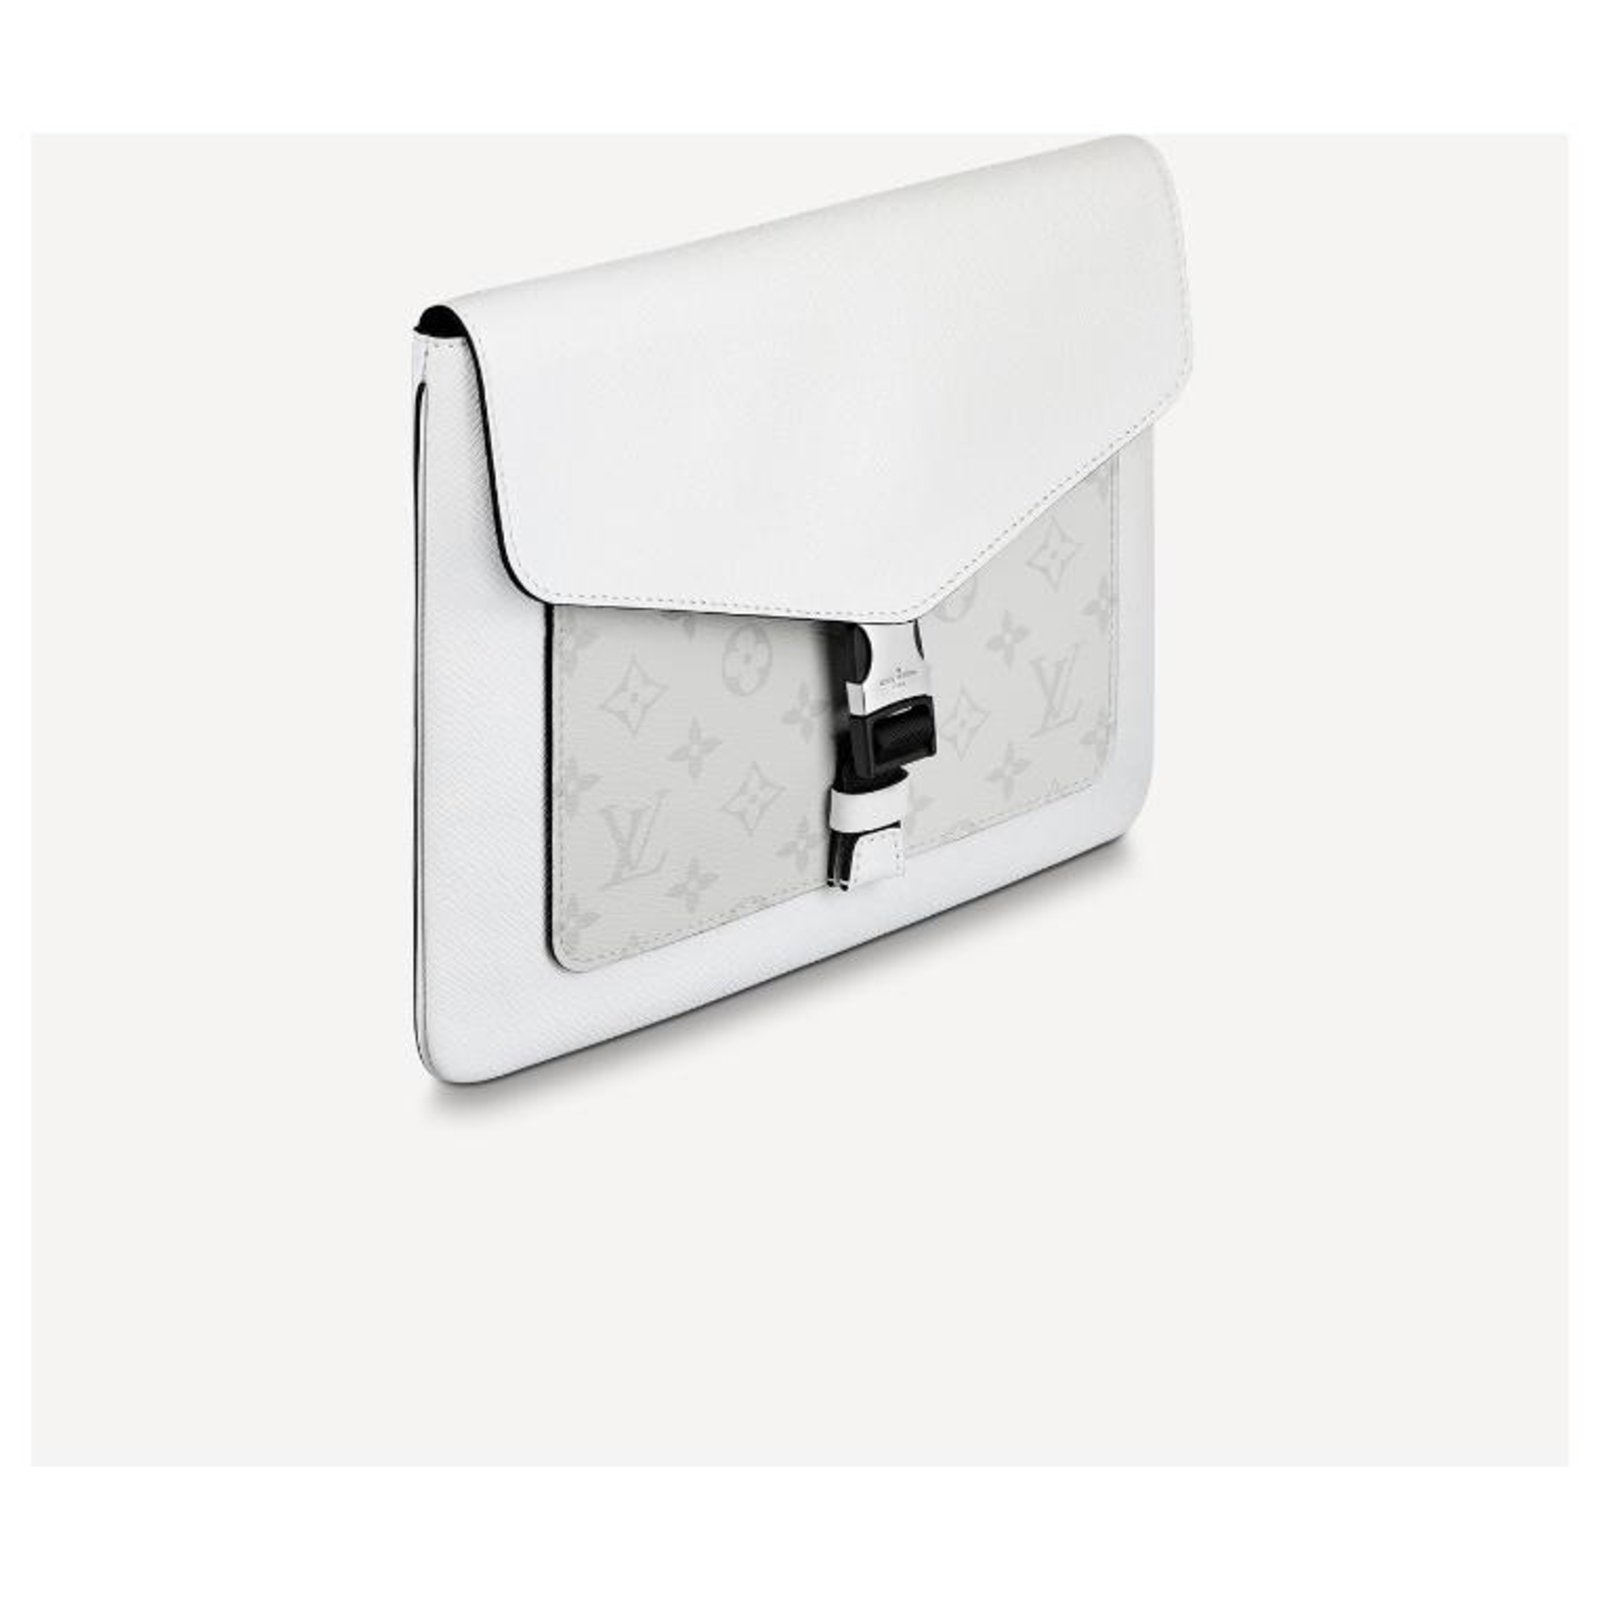 Louis Vuitton Mochila Blanco Cuero ref.45008 - Joli Closet